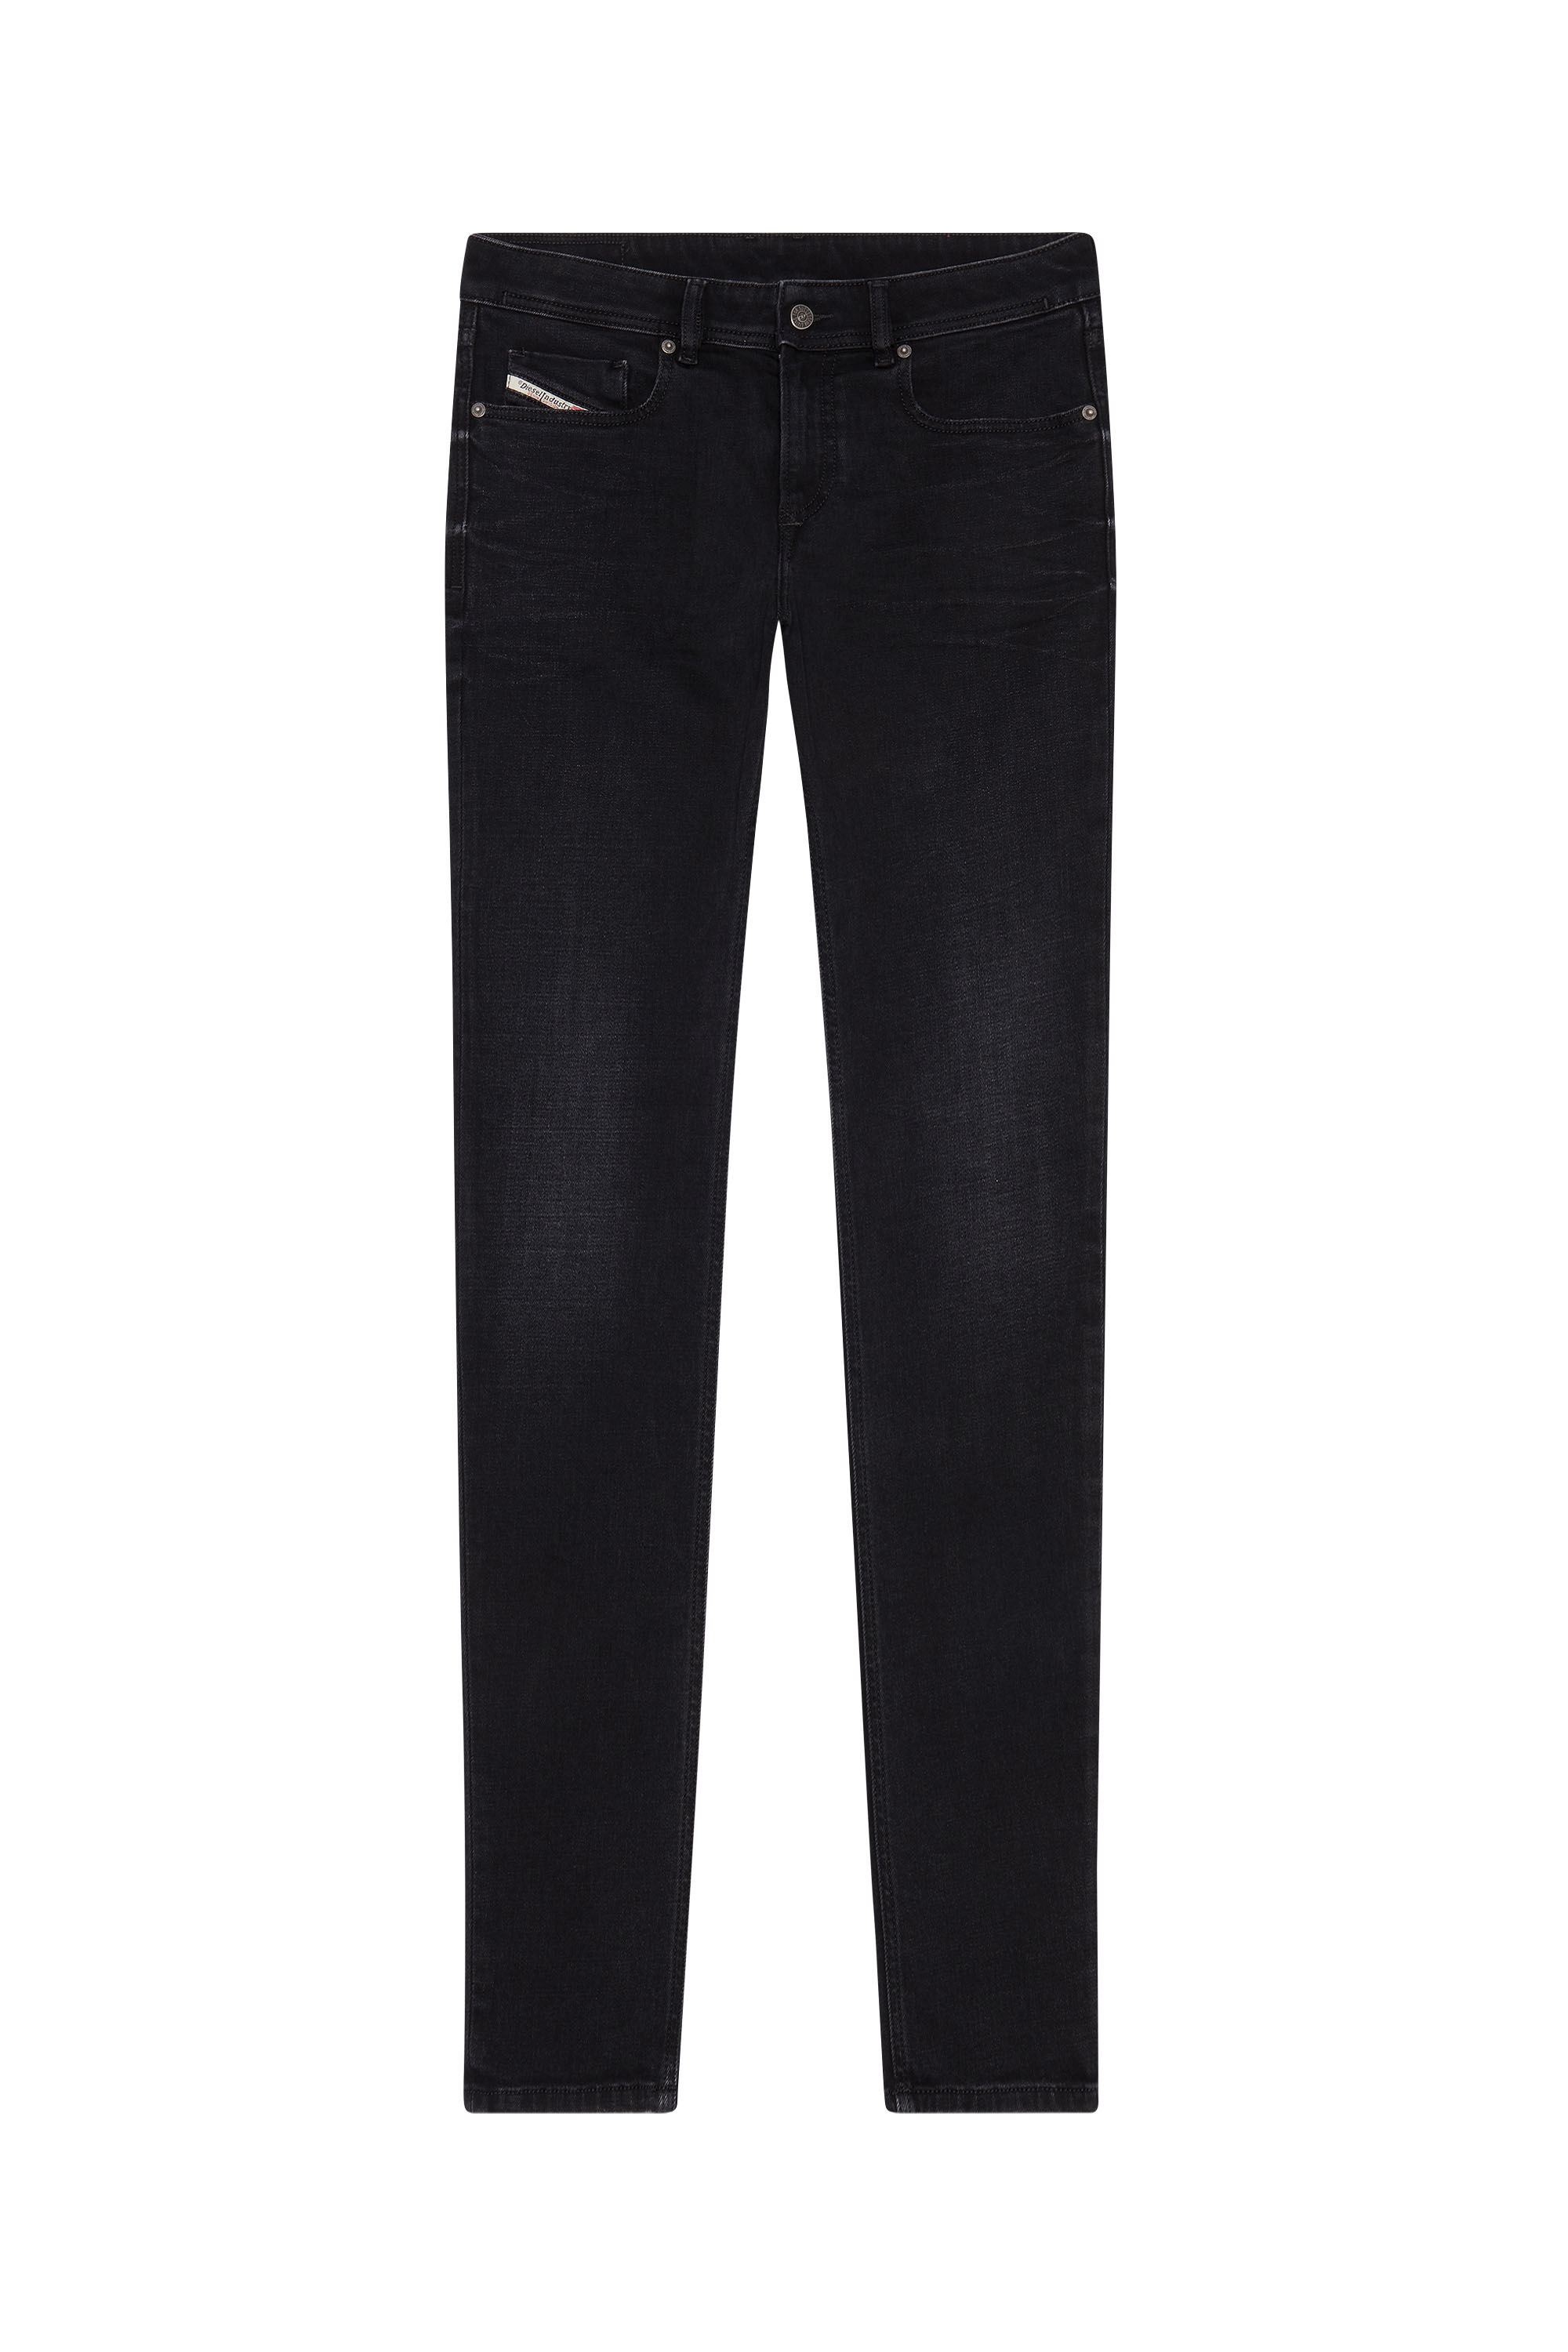 Diesel - Skinny Jeans 1979 Sleenker 09D41, Black/Dark Grey - Image 2